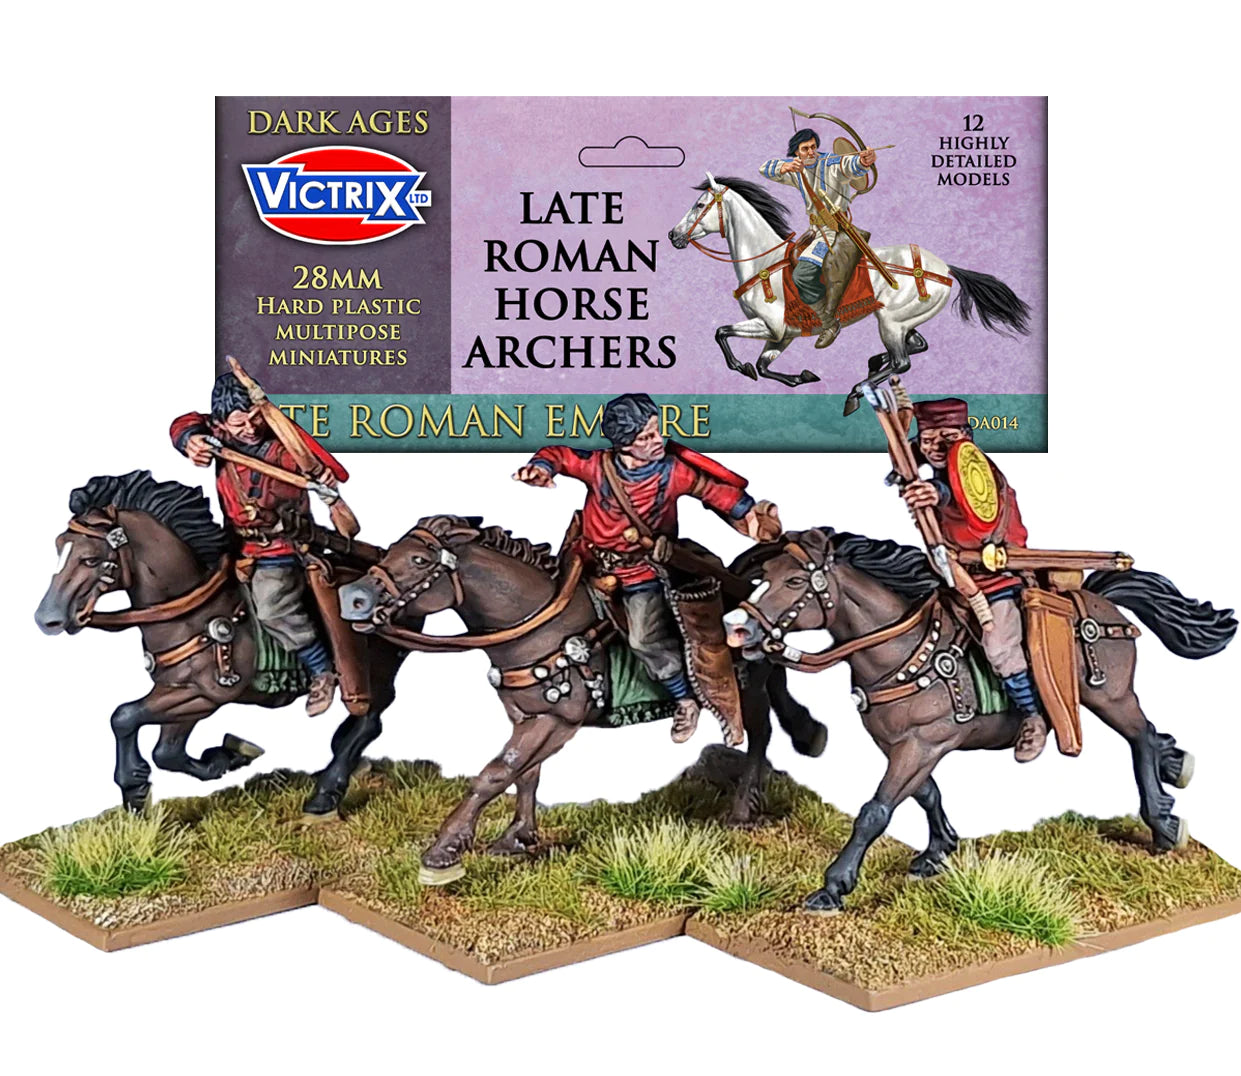 VXDA014 Late Roman Horse Archers - Chester Model Centre